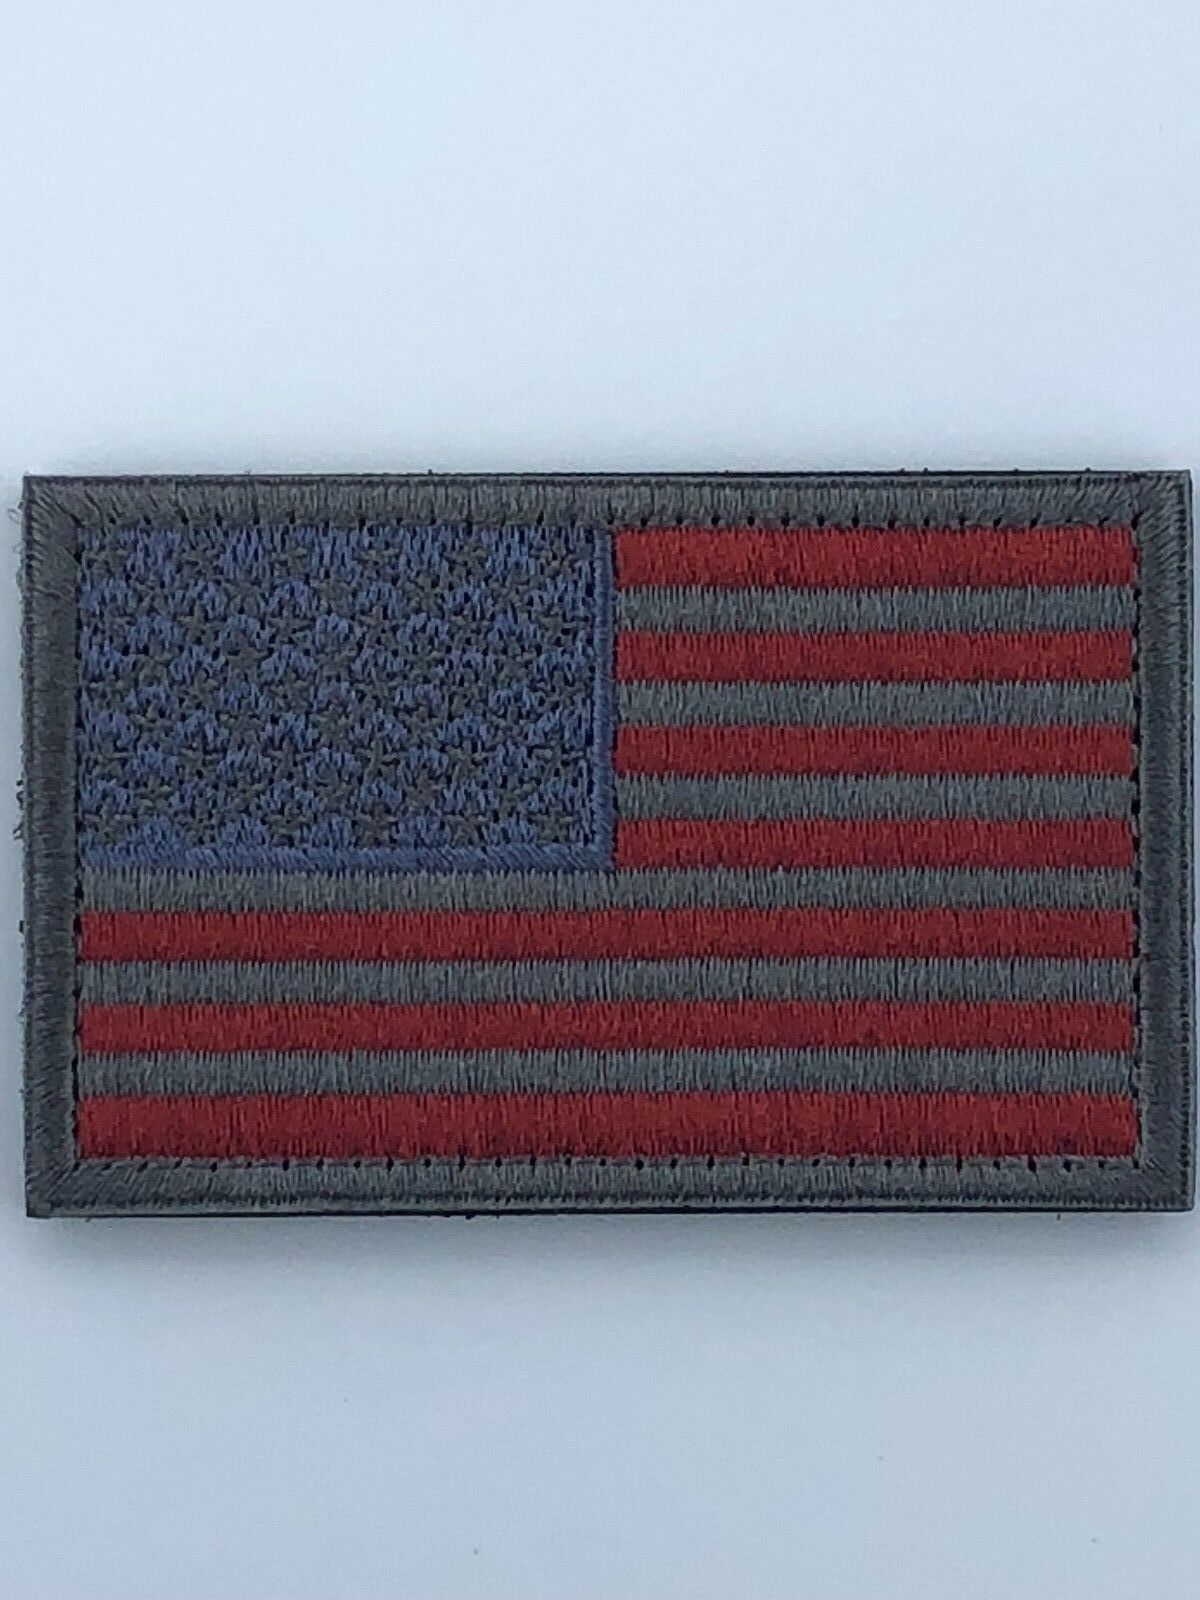 Parche de bandera estadounidense de 2.0 x 3.0 in con gancho y bucle militar táctico | Elección de bandera